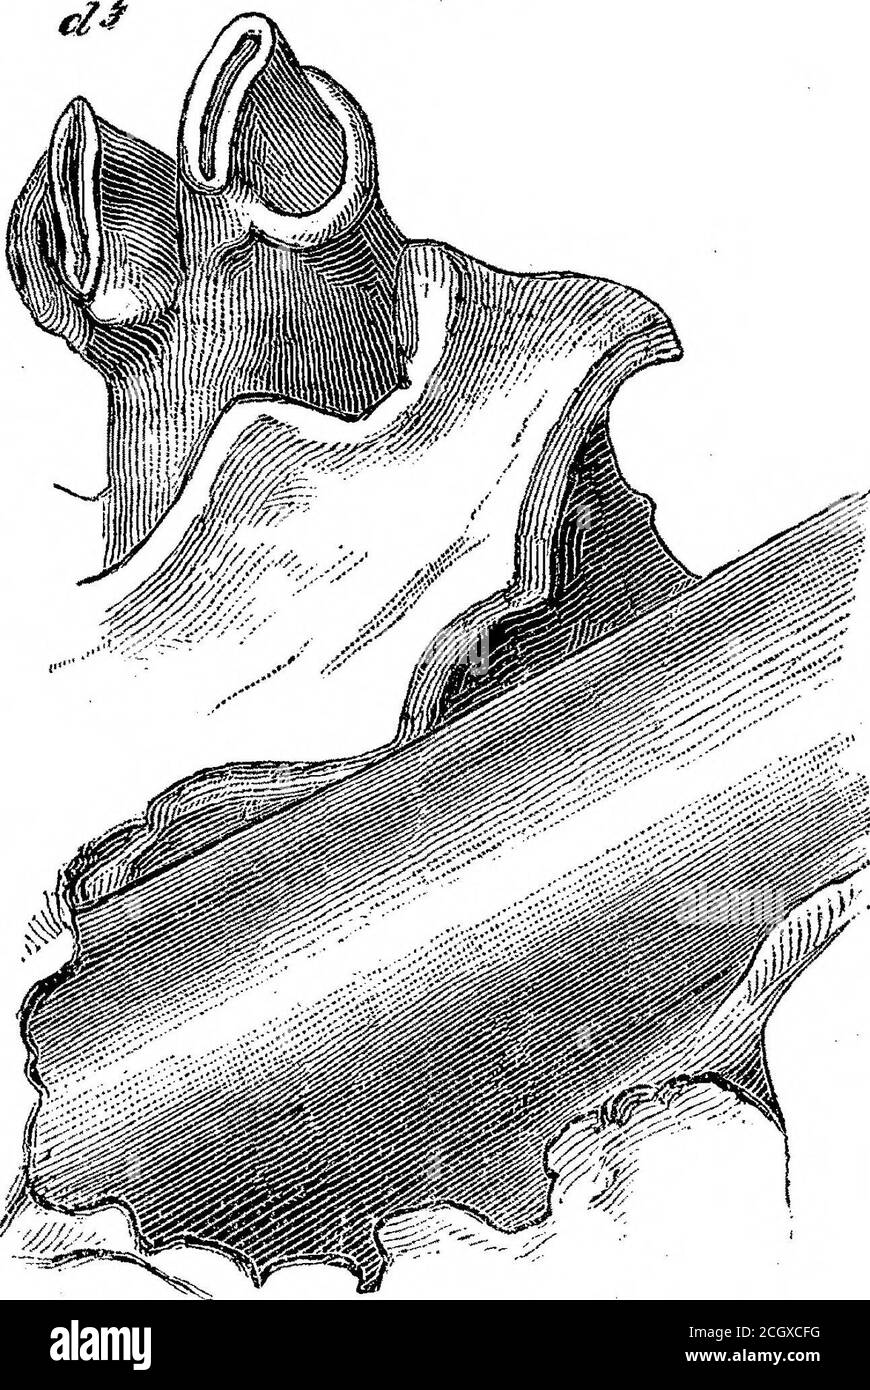 . Sui mammiferi fossili dell'Australia. Parte III. Diprotodon australis, Owen. E di dente. L'estensione longitudinale della presa è di 9 linee, quella della fossa posteriore o divisione è di 3^ linee, quella anteriore di 2^ linee, e quella della barra di interposizione è di 2^ linee in corrispondenza della sua parte prominente. Nella ganascia più giovane il secondo molare (piastra XLI. figg. 1 & 2, d 4) ha entrambi i lobi della corona circa la metà usurata; l'estensione avanti e indietro della corona, comprese le creste basali anteriore e posteriore, è di 1 pollice 6 linee. La cresta basale anteriore è addensata alla sua parte esterna, e qui lo smalto è stato indossato ofi* Foto Stock